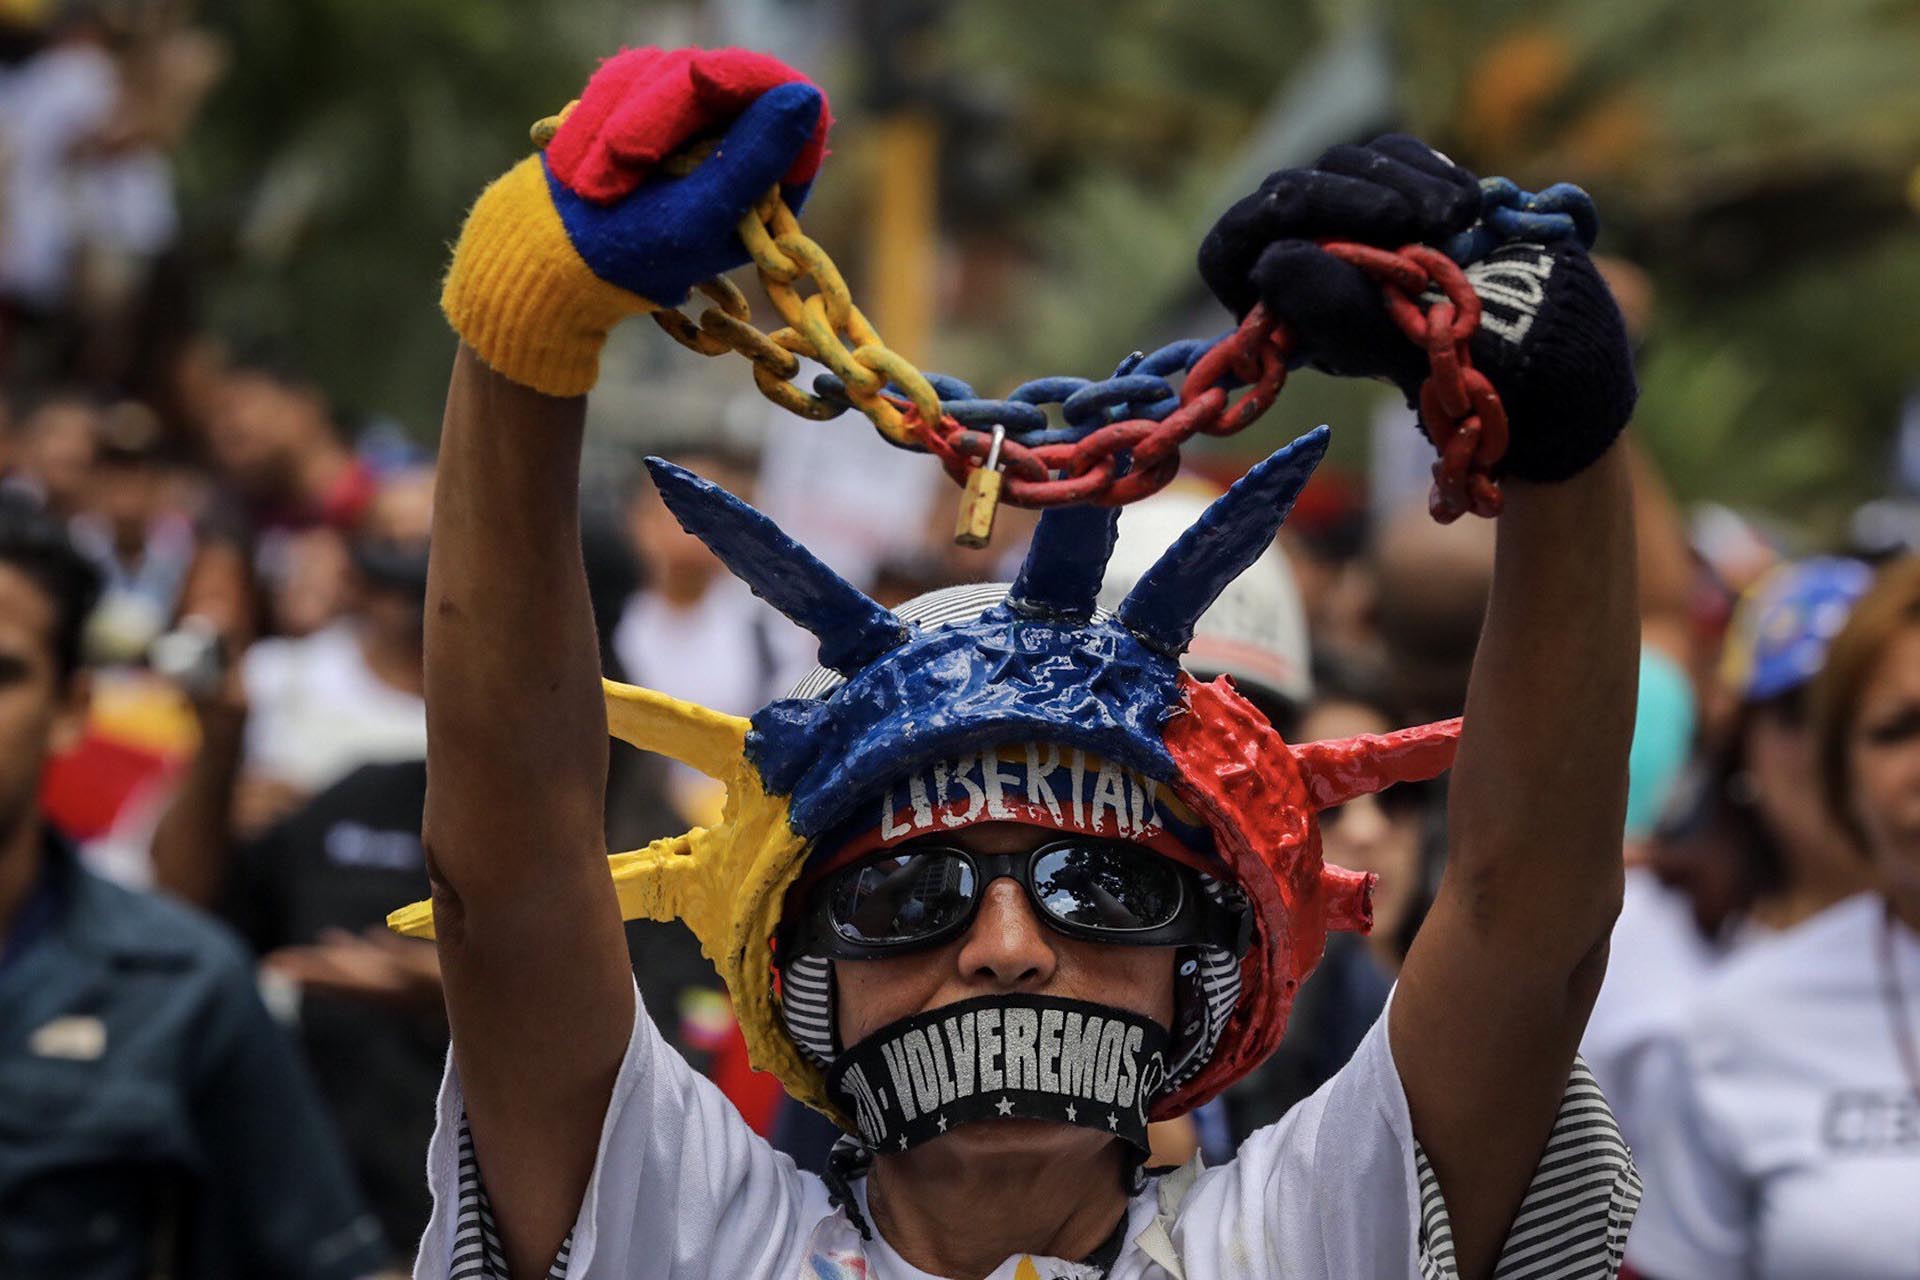 Periodistas venezolanos acompañados de ciudadanos y algunos diputados opositores se movilizaron el 27 de junio de 2017 hacia el ente regulador de Telecomunicaciones por el Día Nacional del Periodista y por la libertad de expresión en el país caribeño. (EFE)